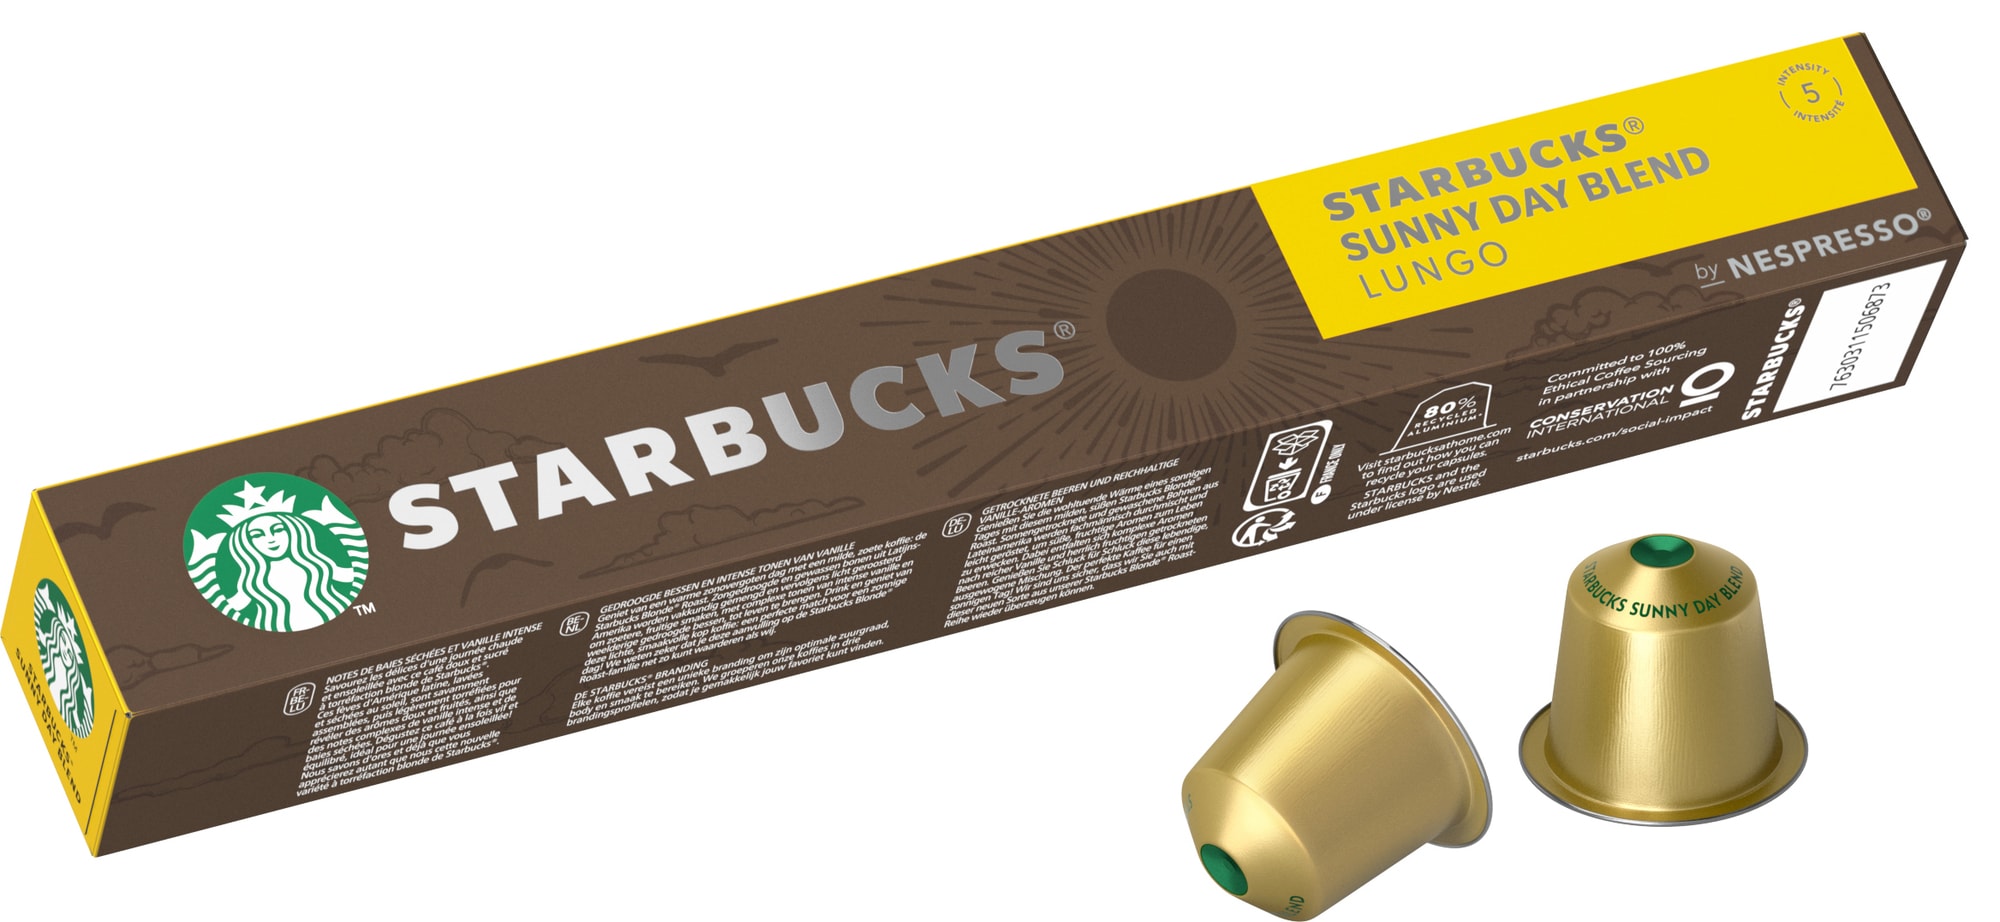 Starbucks by Nespresso Sunny Day Blend kaffekapsler 12498889